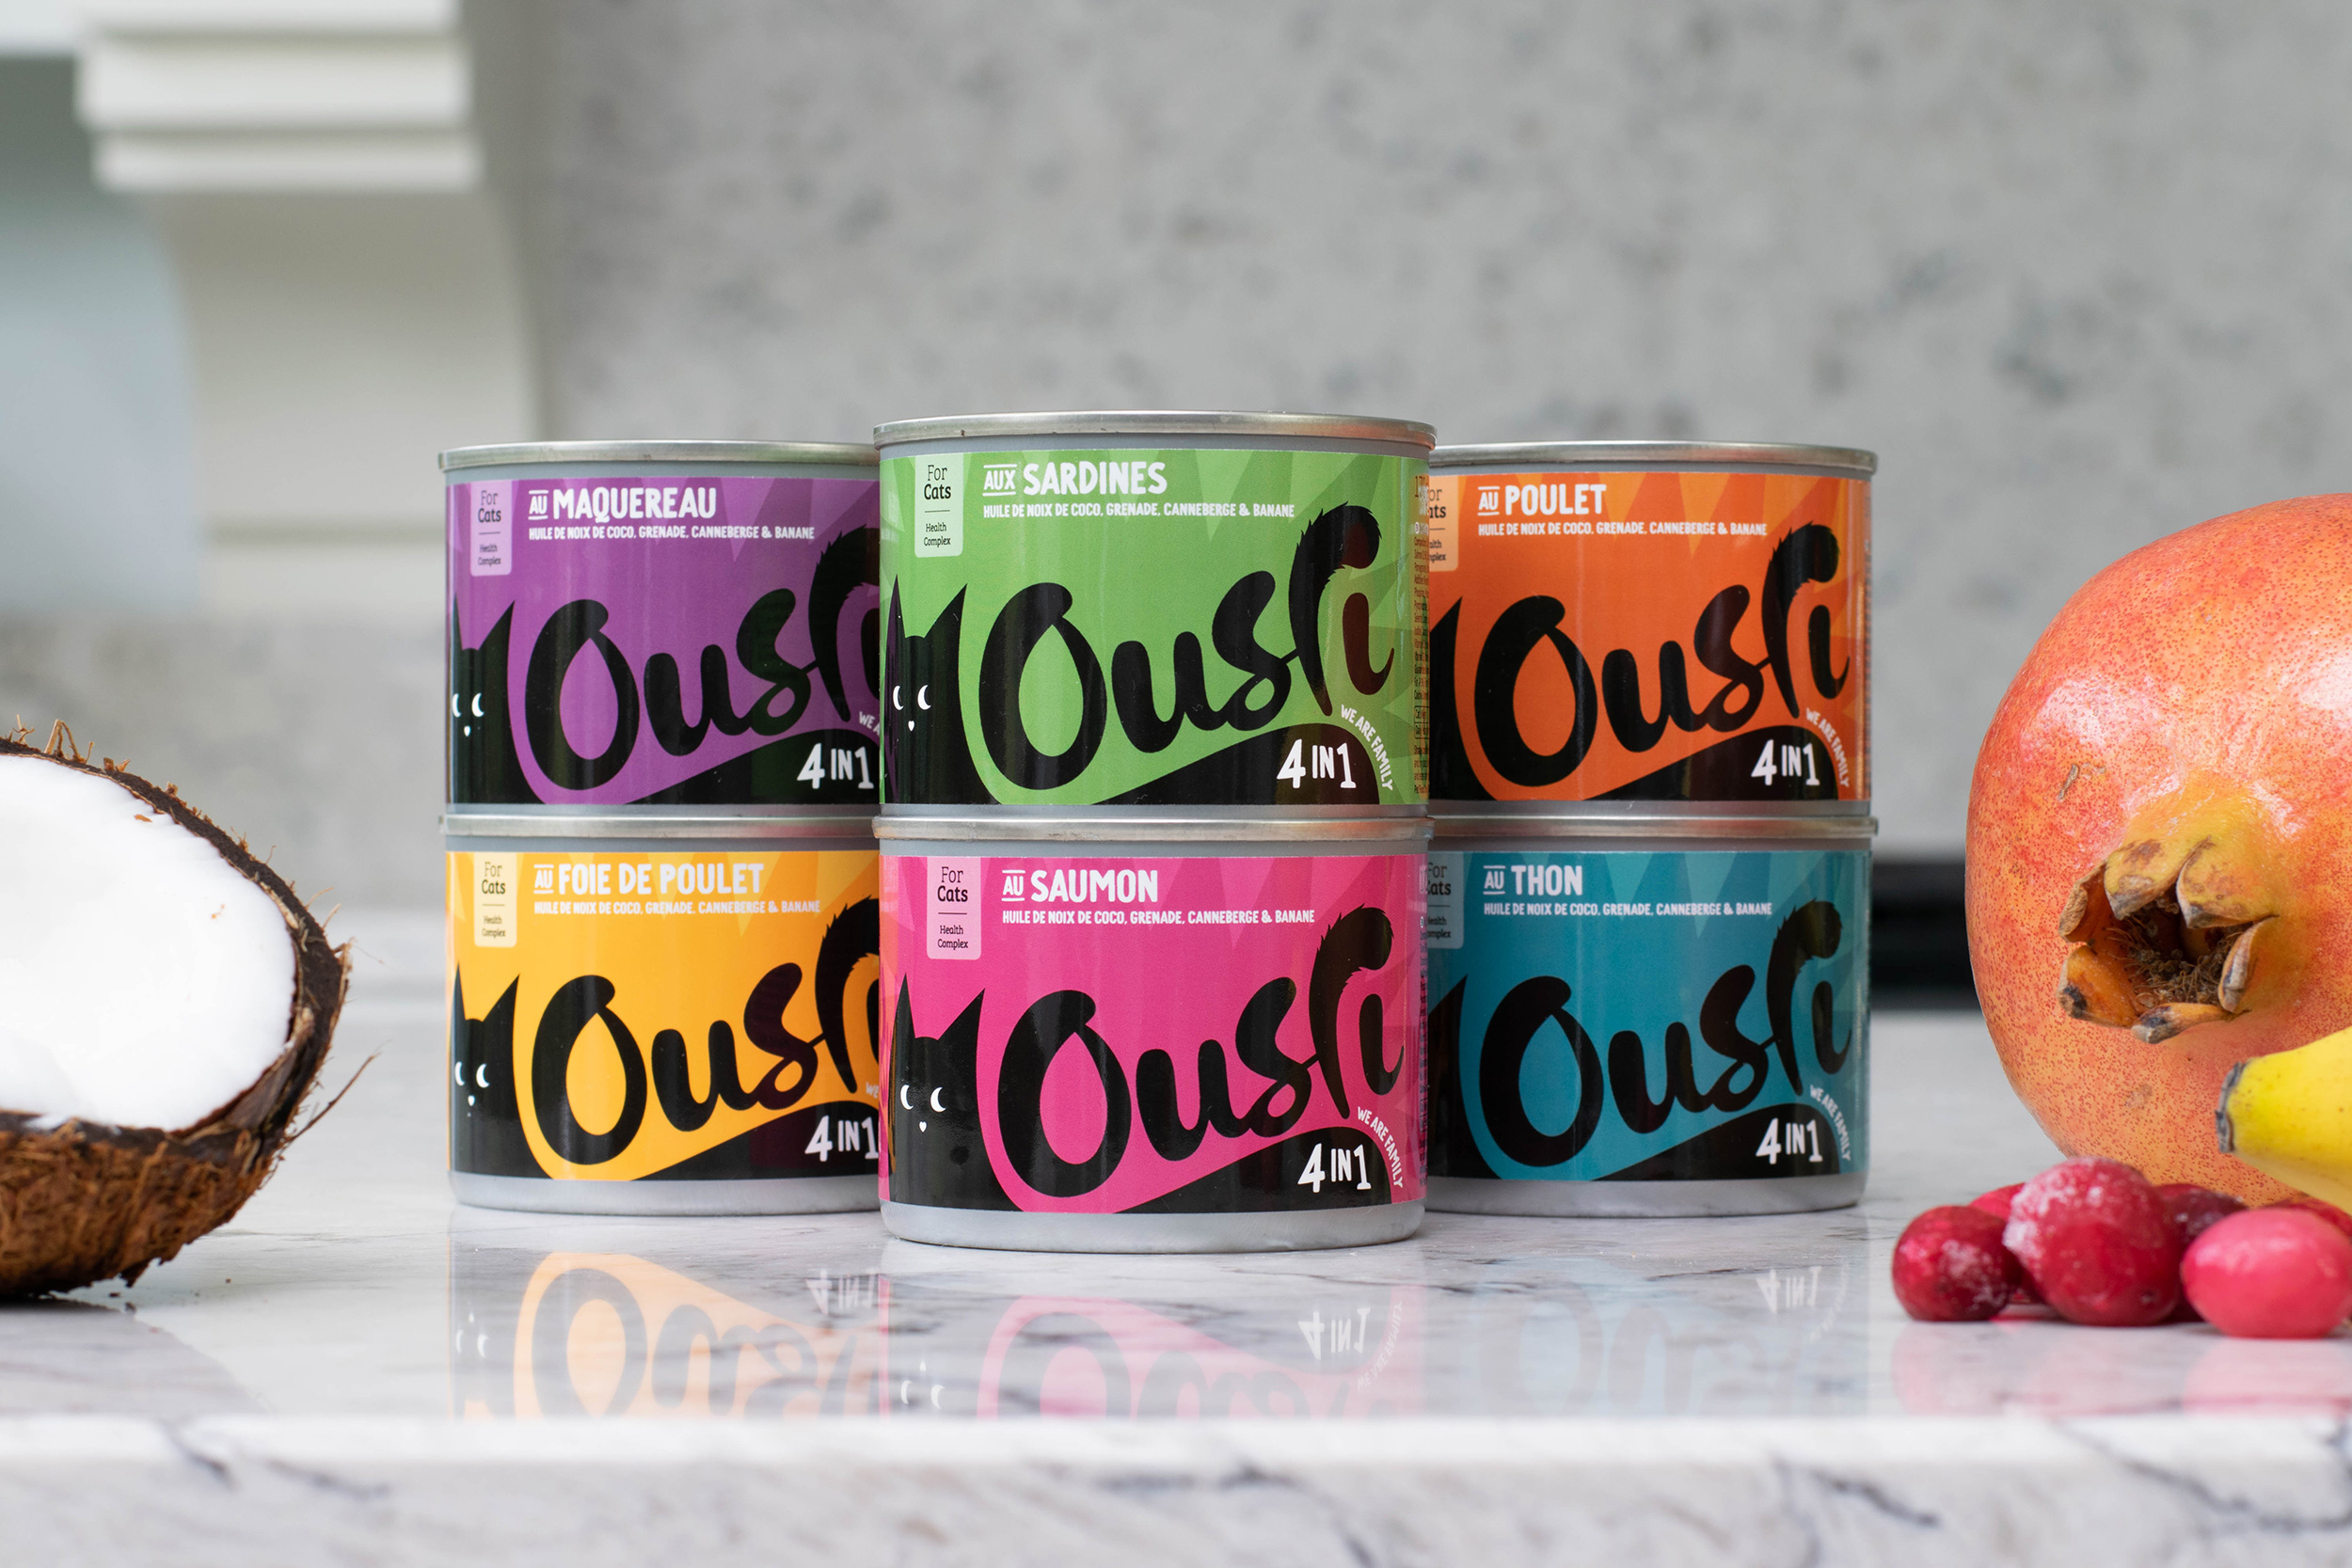 Award Winning Packaging Design for International Pet Food Brand Ousri